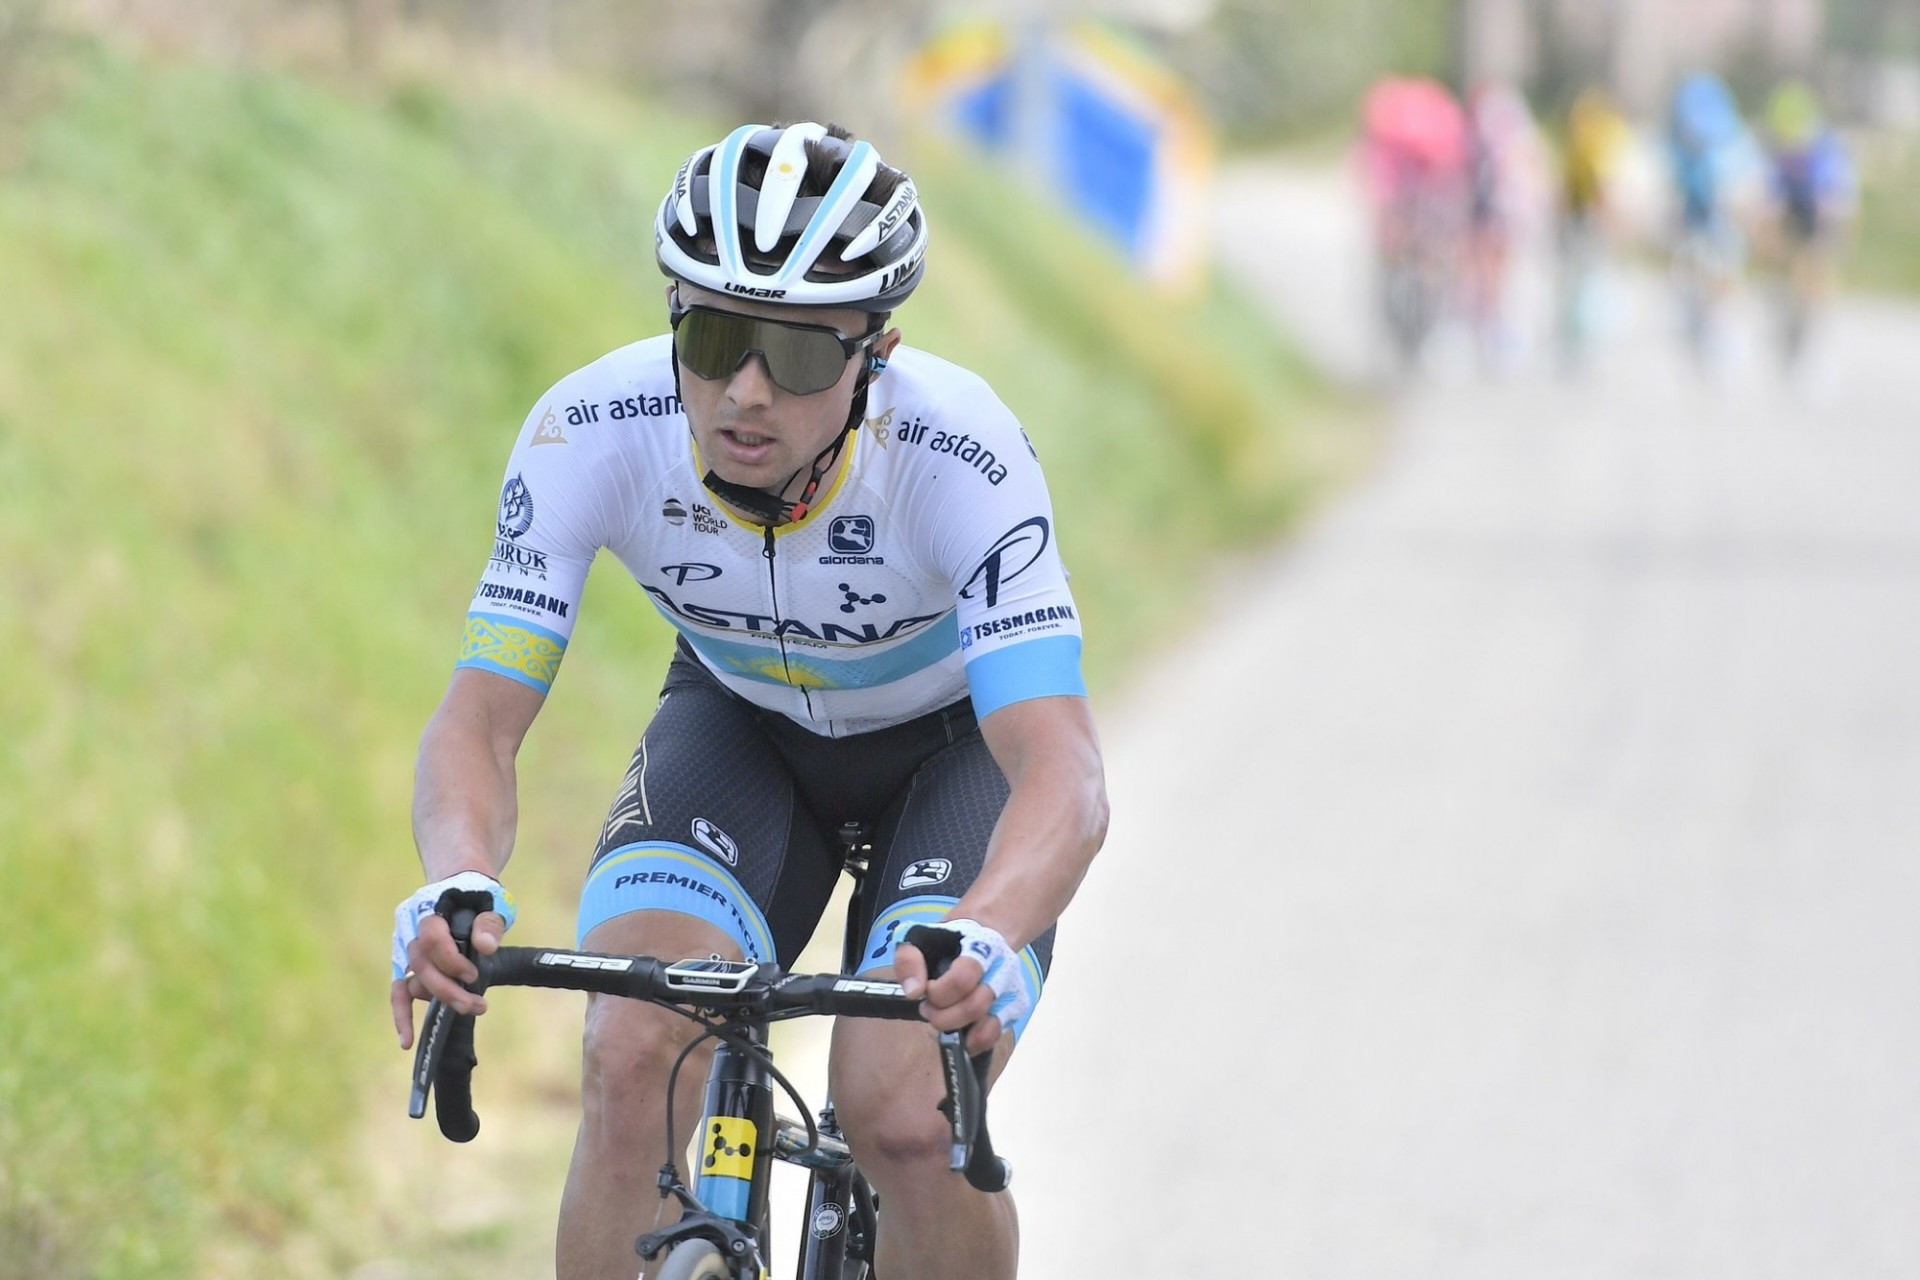 "Тур де Франс": Алексей Луценко стал седьмым на втором этапе супермногодневки